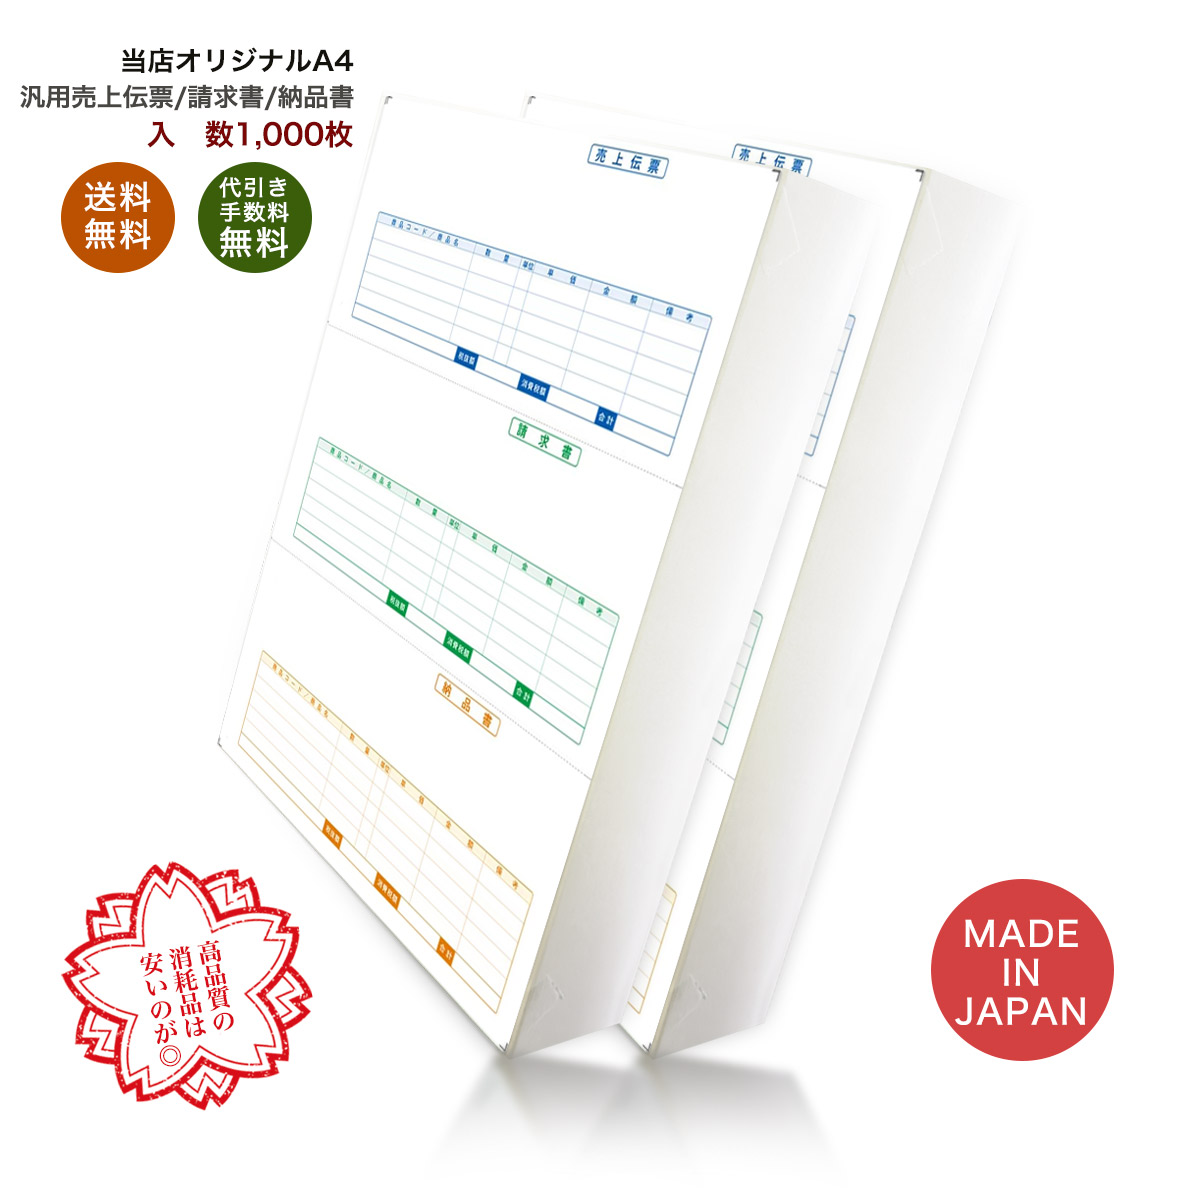 334601 伝票 1,000枚 品番:INO-4601 送料無料 代引き手数料無料 安心の日本製 オリジナル 伝票 業務用